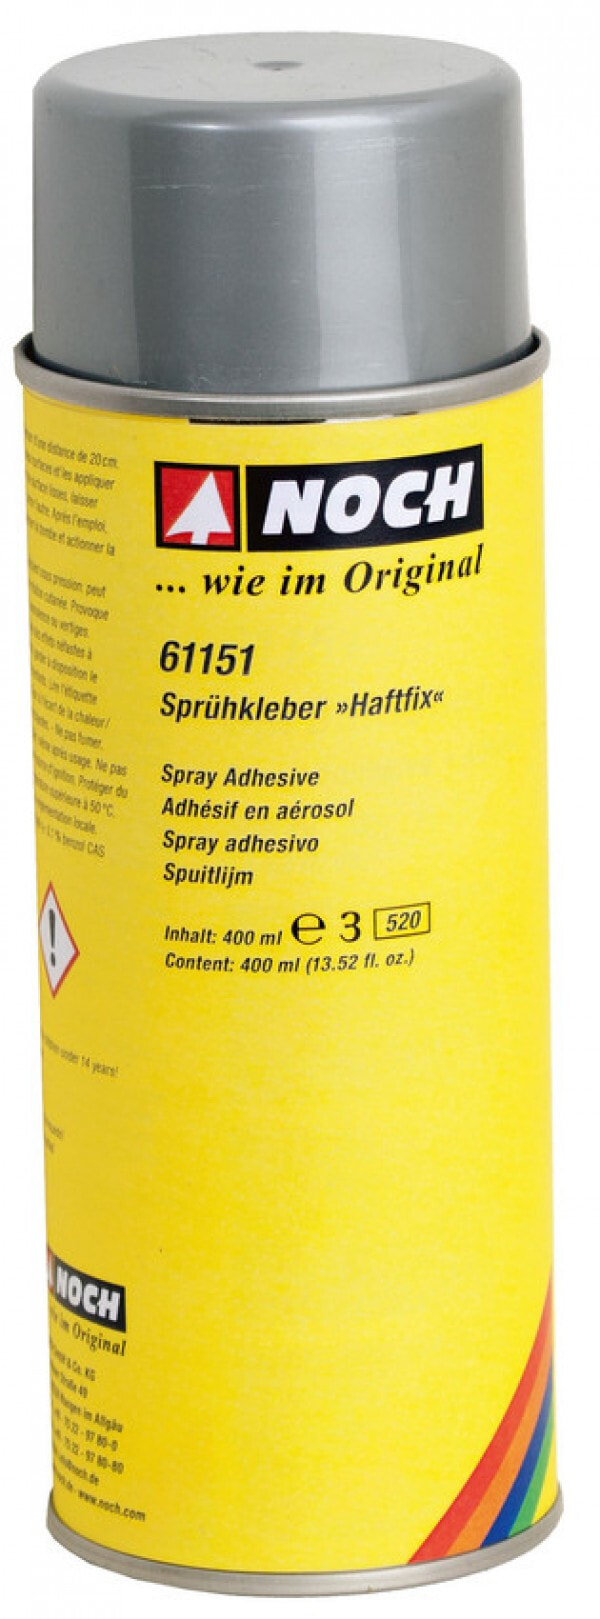 NOCH Haftfix - 400 ml - liquid - Spray glue